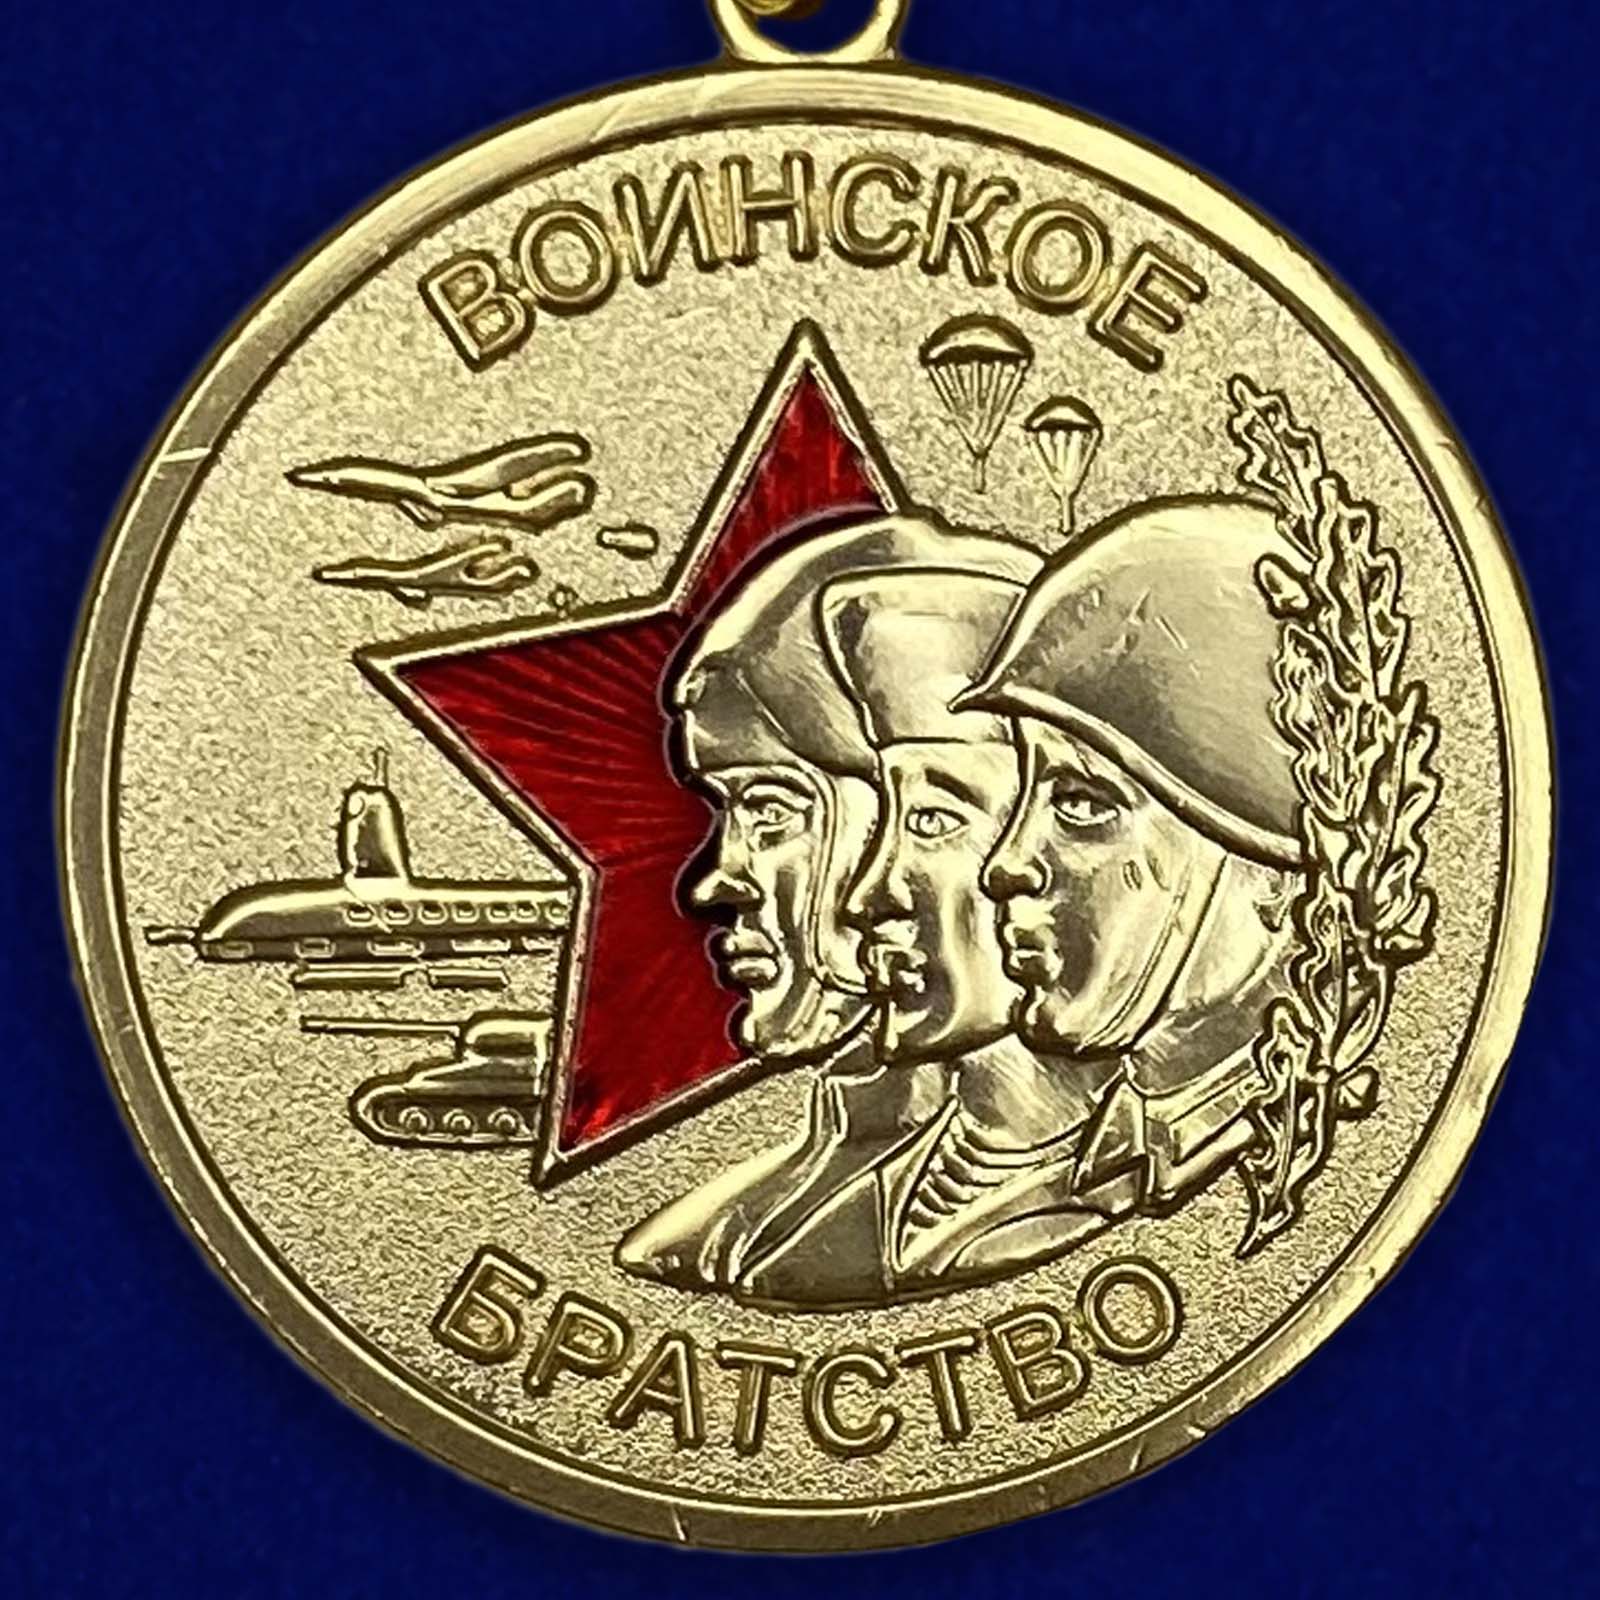 Аверс медали "Воинское братство"